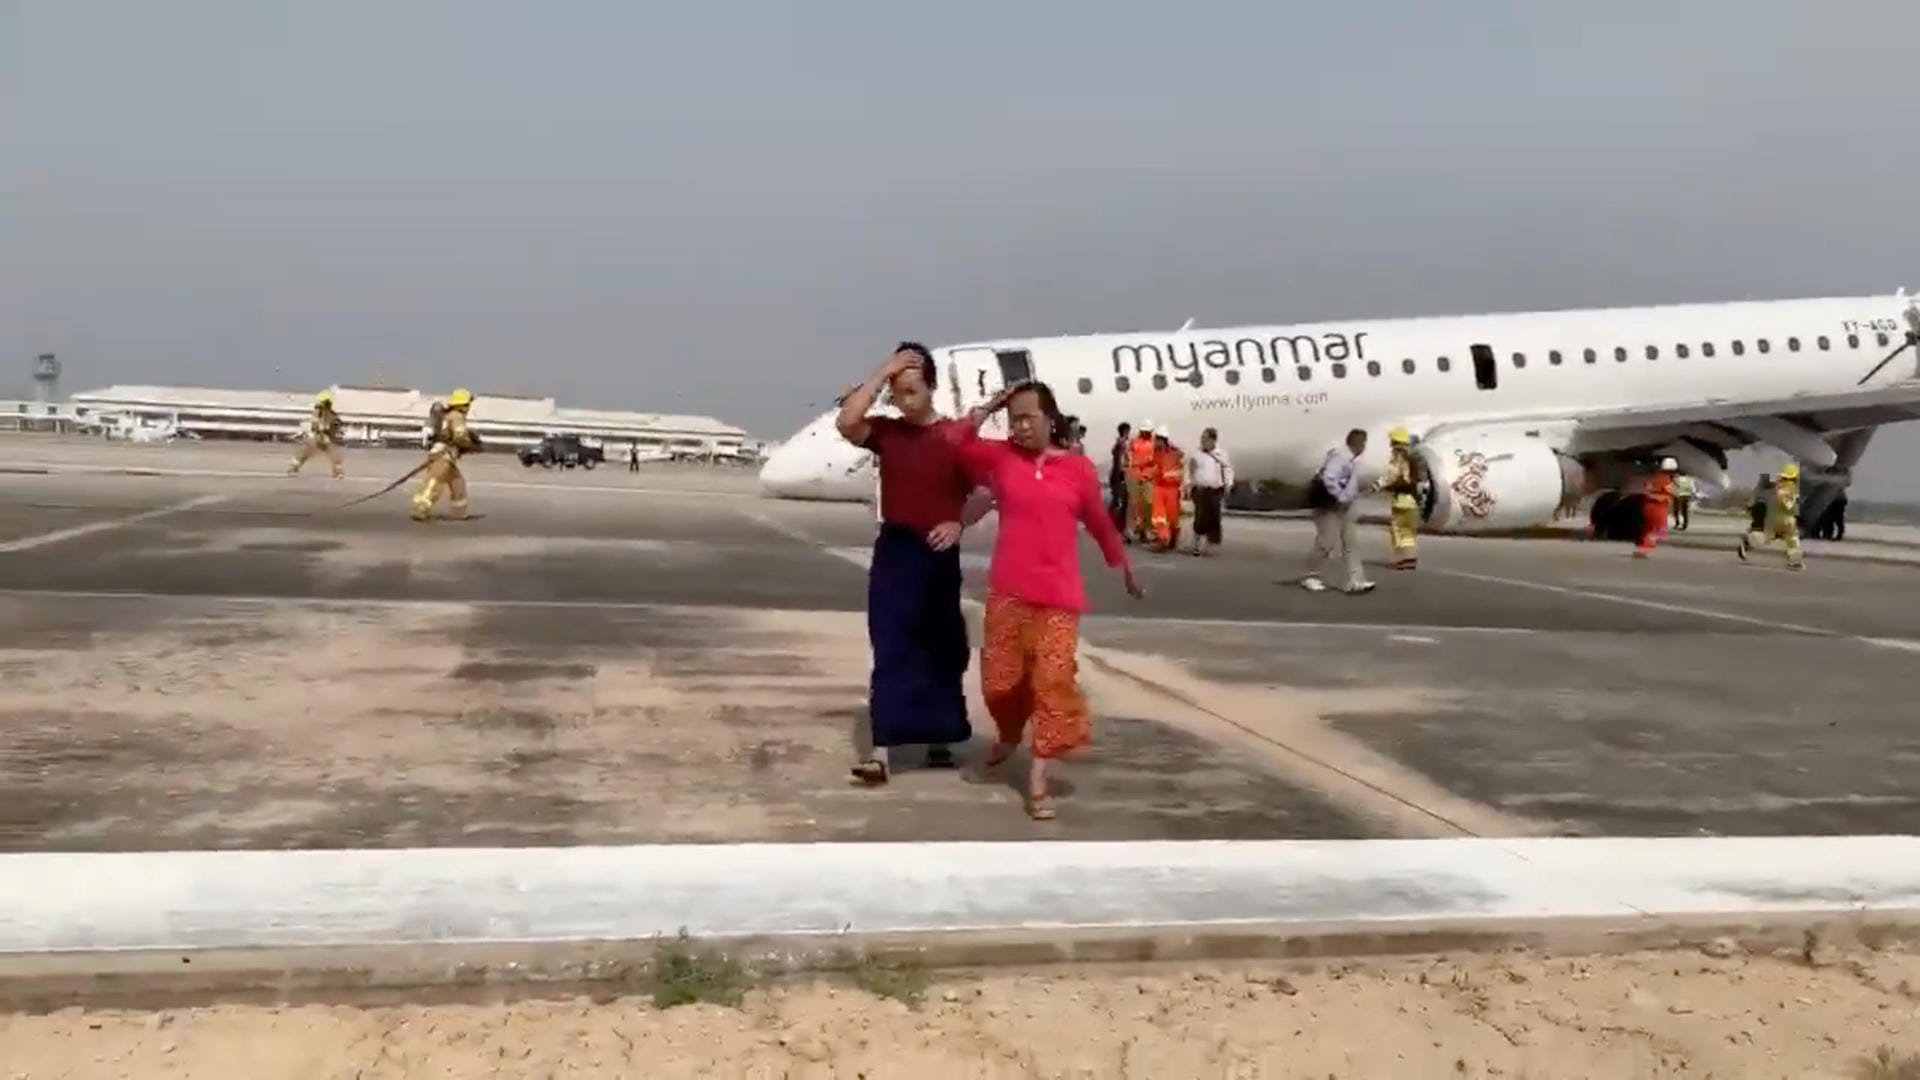 Passagiere verlassen das Gebiet um das Flugzeug: Rettungskräfte helfen den Menschen dabei, das Flugzeug zu verlassen.